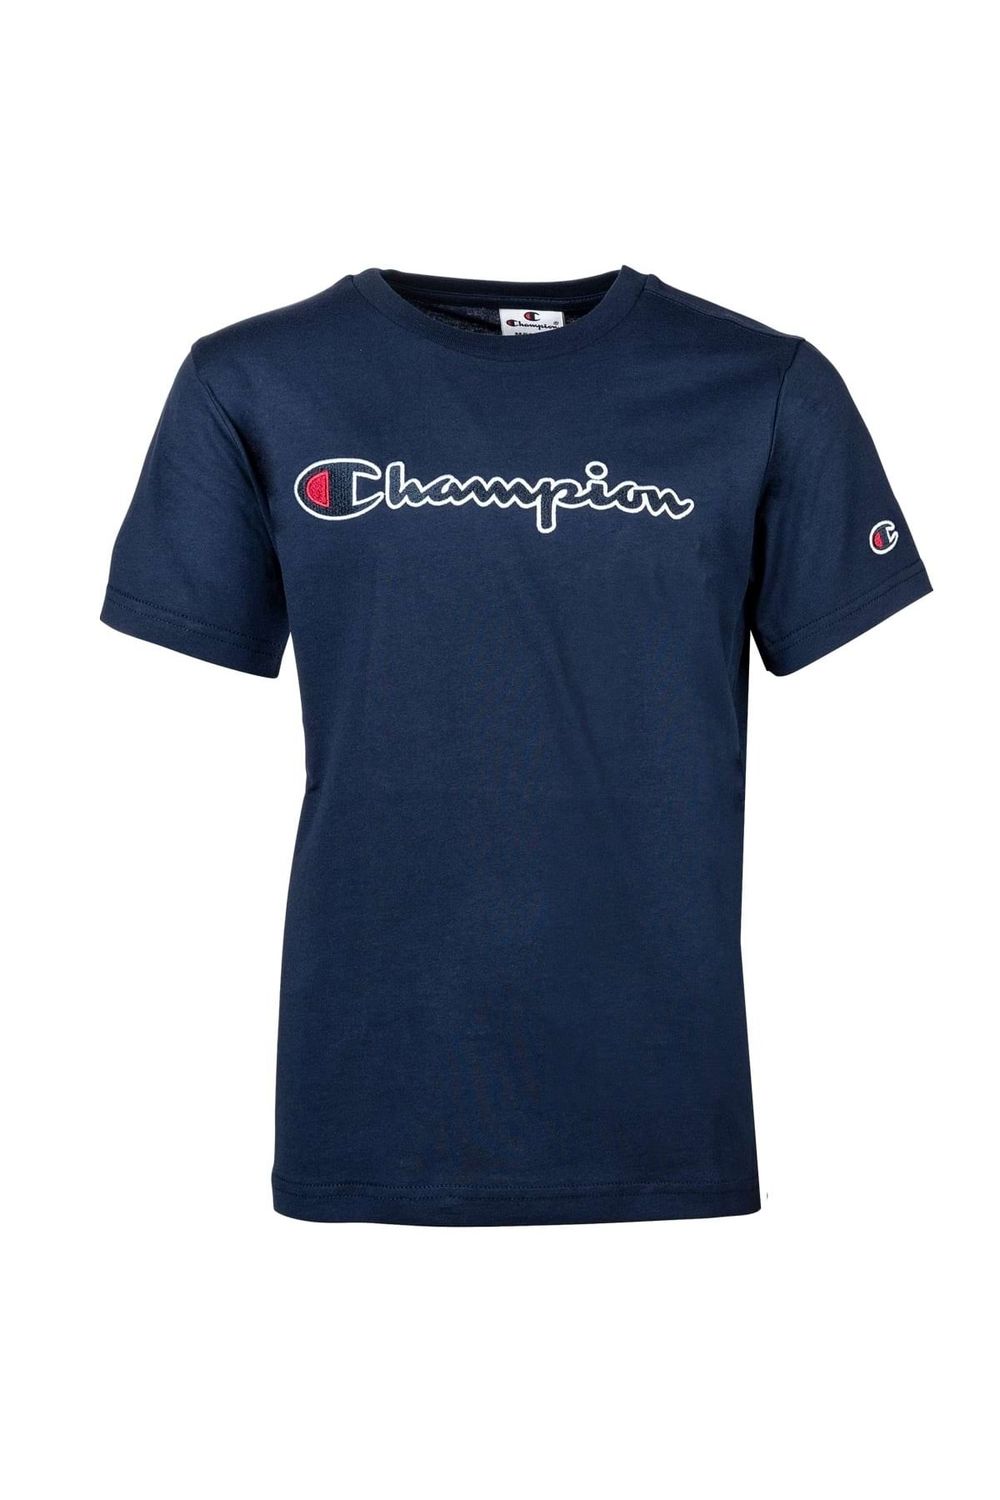 Champion Kinder Unisex T-Shirt - einfarbig Baumwolle, Logo, - Rundhals, Crewneck, Trendyol großes